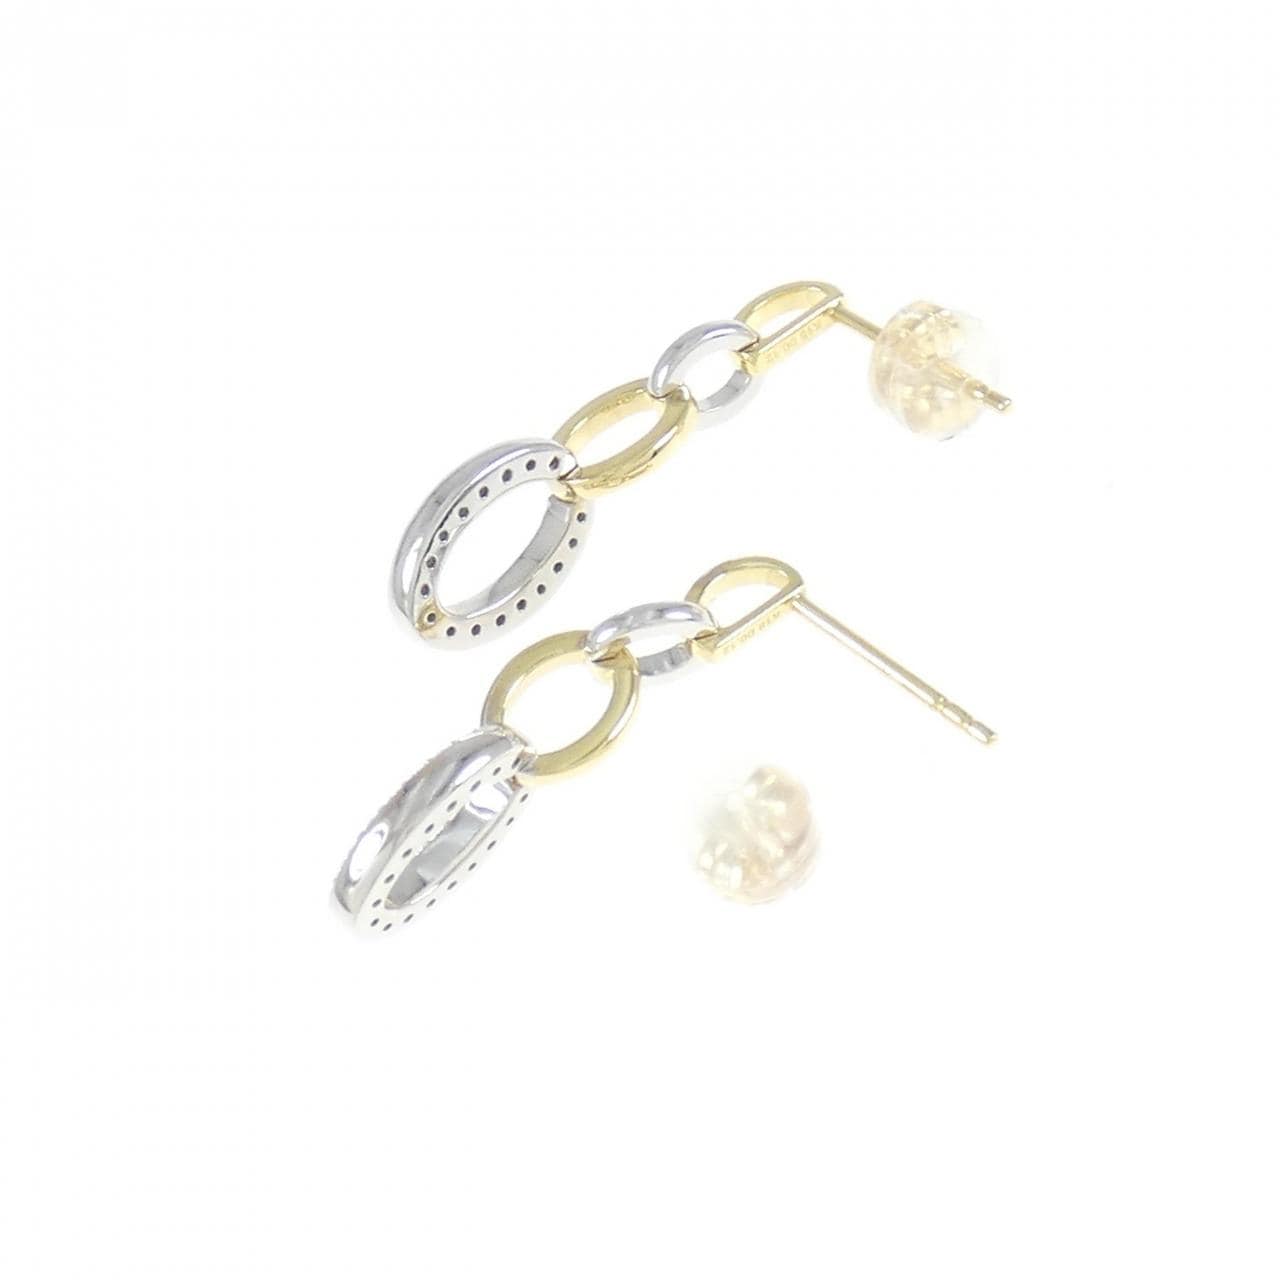 K18YG/K18WG Diamond Earrings 0.24CT